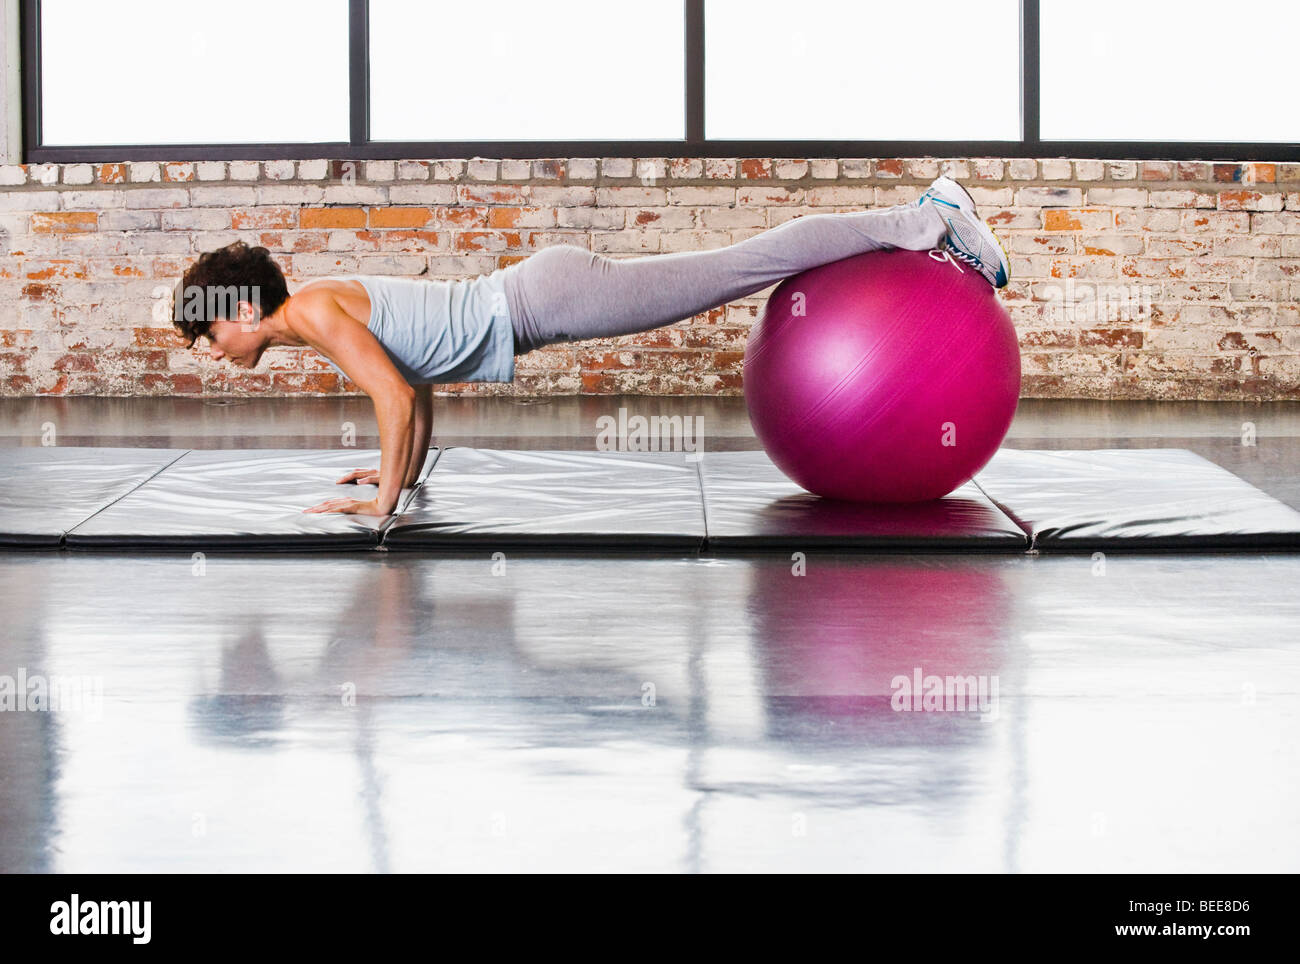 Eine junge Frau, die in einem Fitnessclub auf einer Matte aufpushups macht, während sie ihre Beine/Füße auf einem Trainingsball ausgleicht. Stockfoto